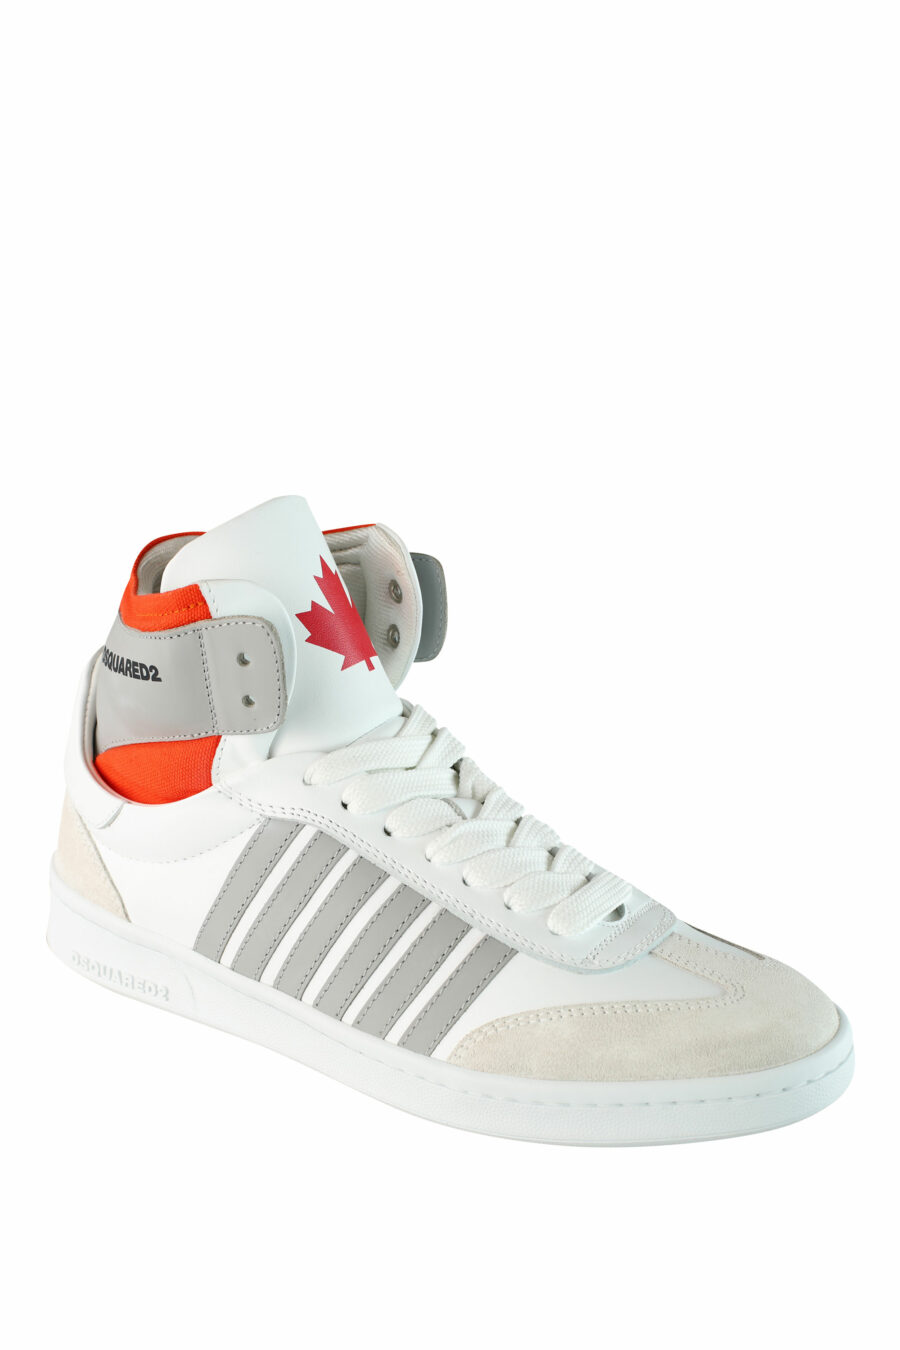 Zapatillas blancas mix "boxer" estilo botín con detalles naranjas y grises - IMG 1502